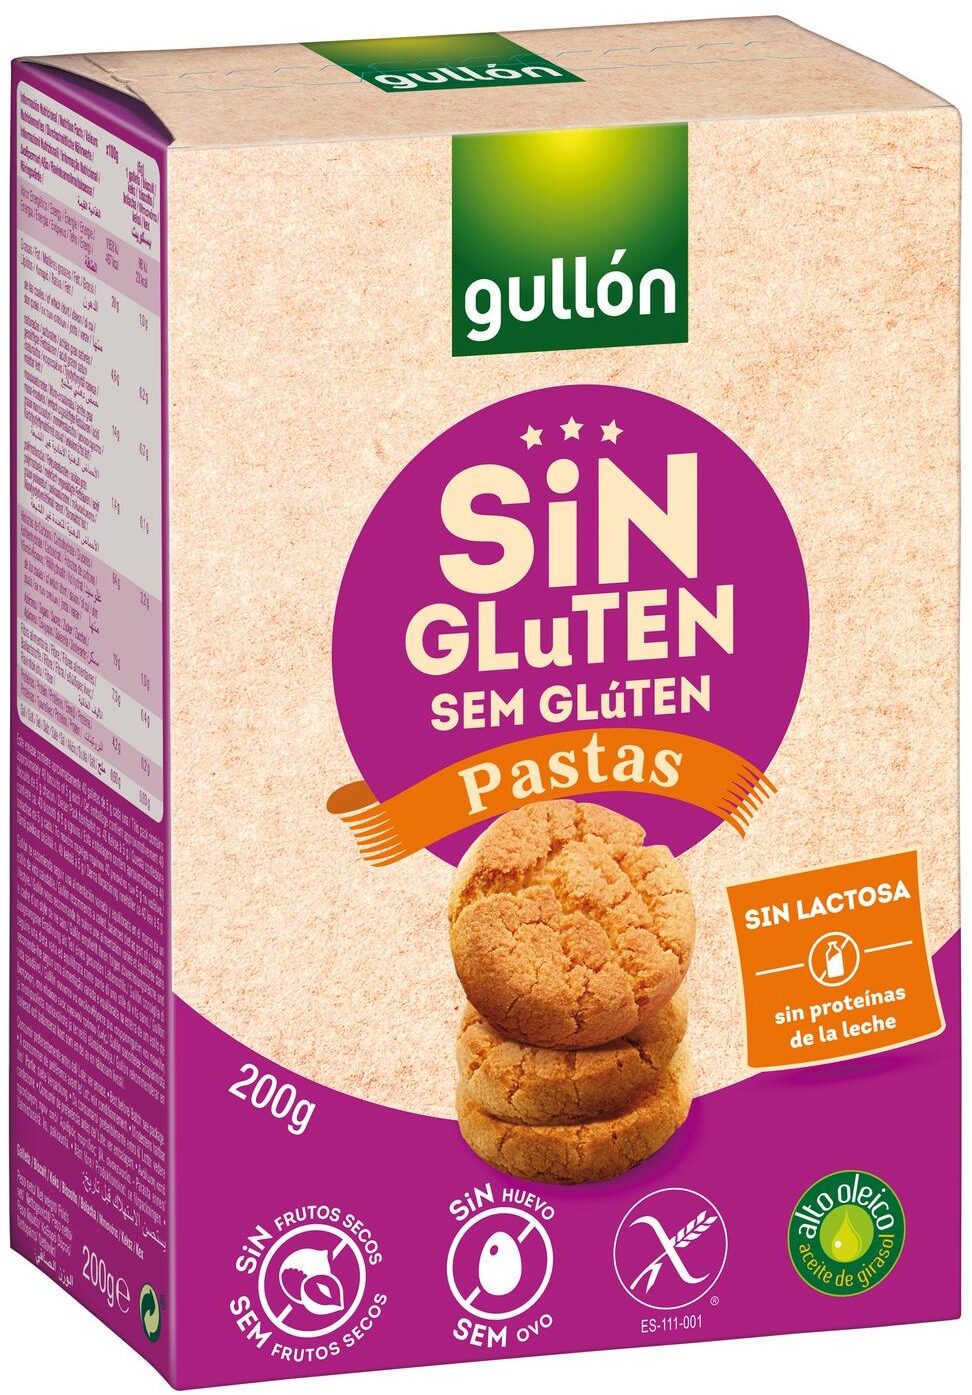 Pastas sin gluten - Producto